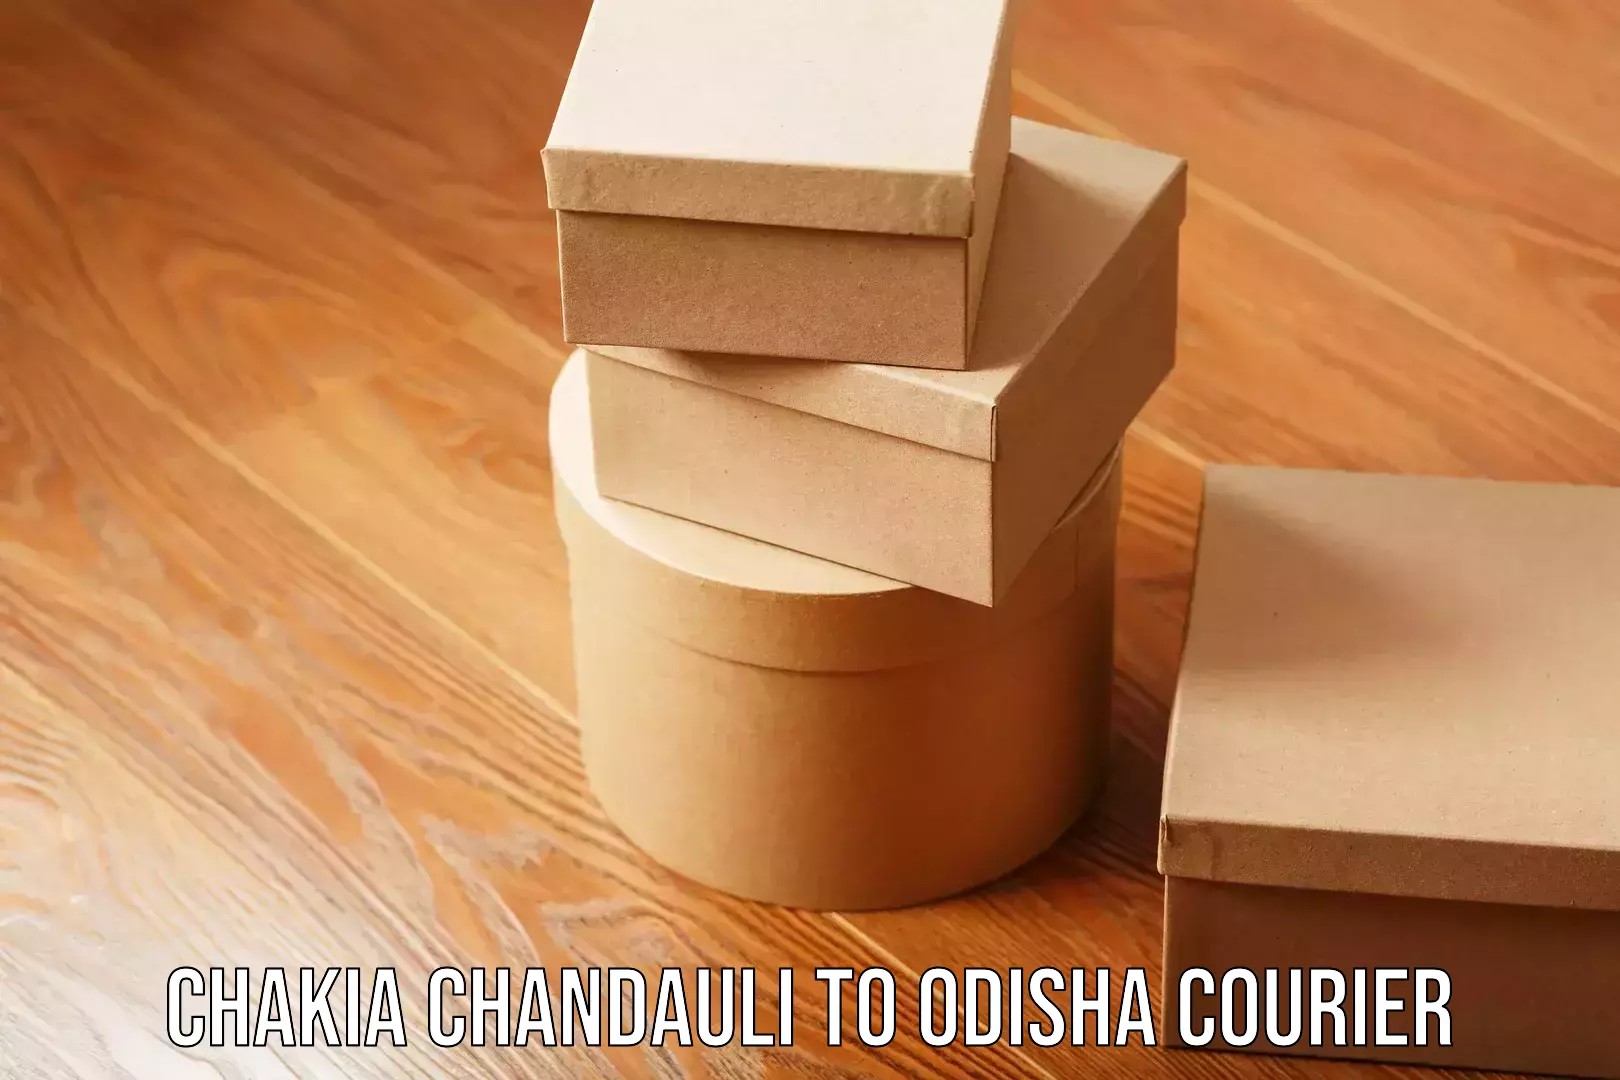 Comprehensive logistics Chakia Chandauli to Odisha